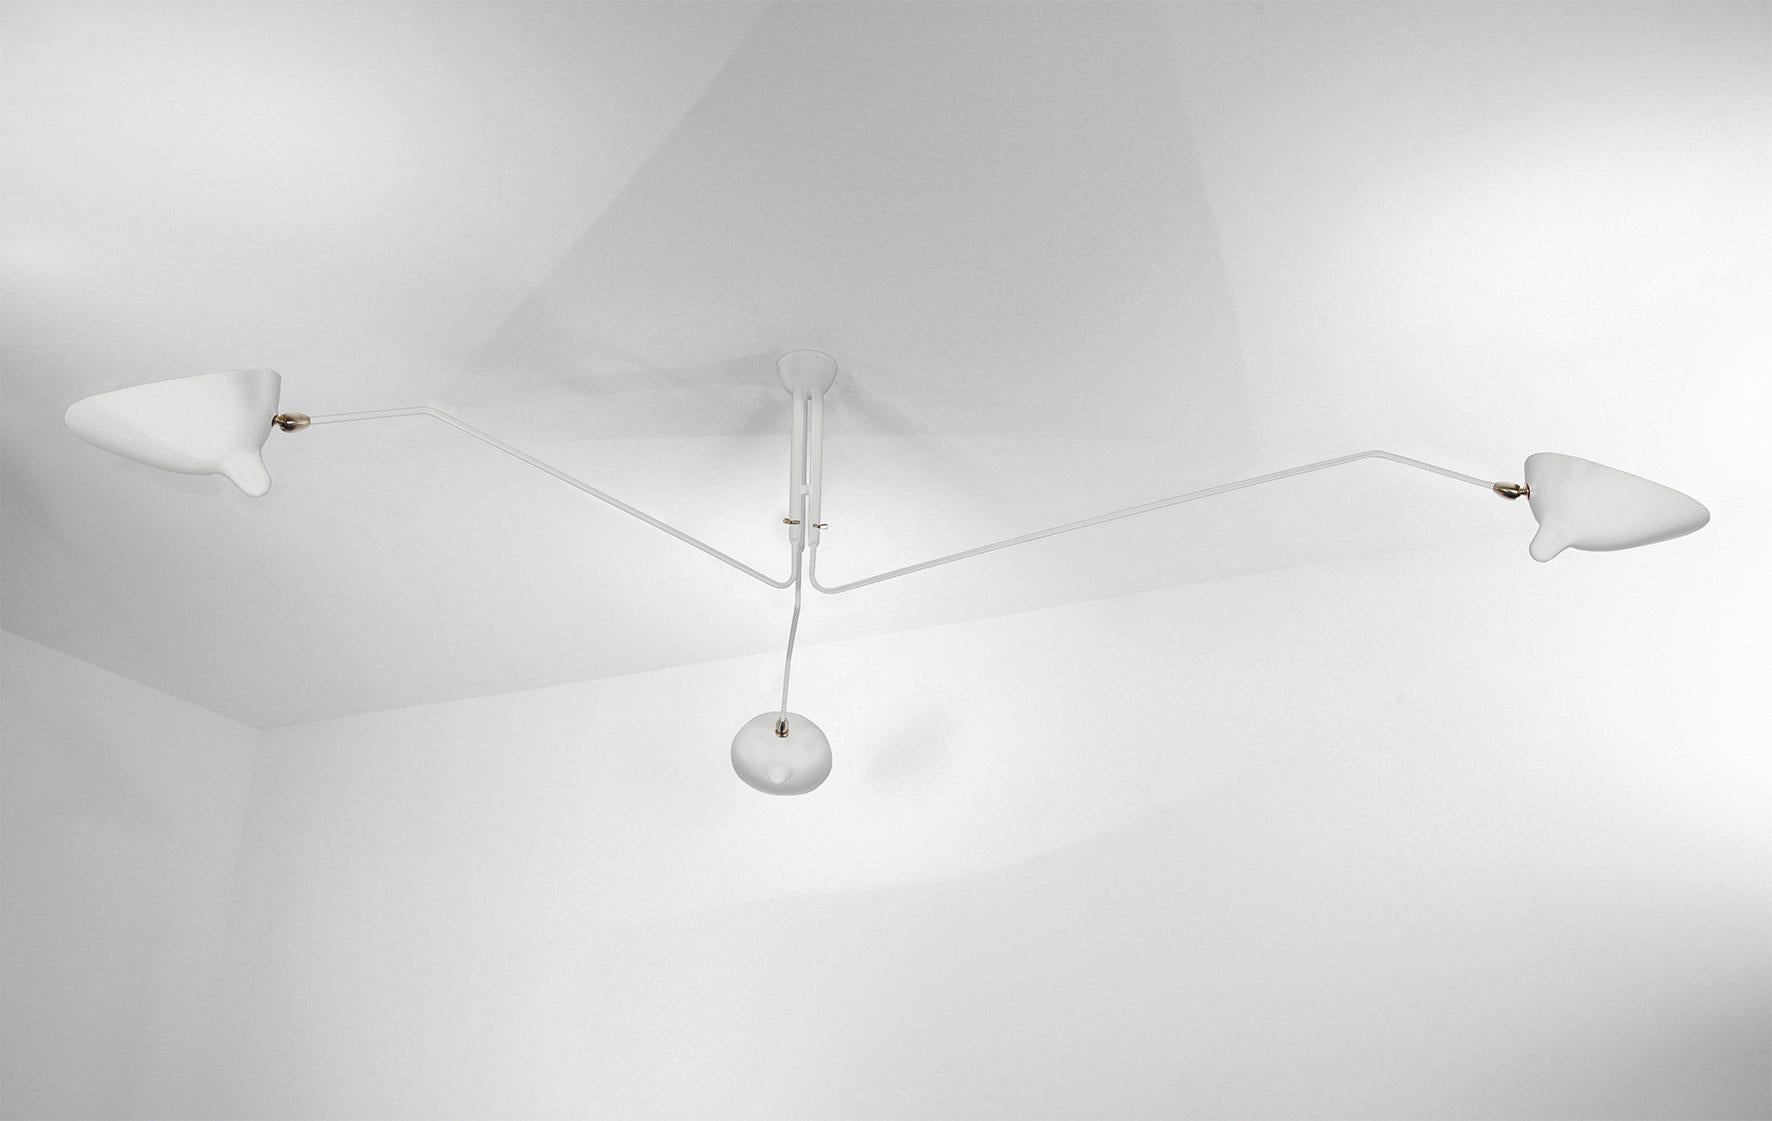 Deckenleuchte Modell 'three rotating arms ceiling lamp', entworfen von Serge Mouille im Jahr 1958.

Hergestellt von Editions Serge Mouille in Frankreich. Die Herstellung der Lampen, Wandleuchten und Stehlampen erfolgt in handwerklicher Weise mit den